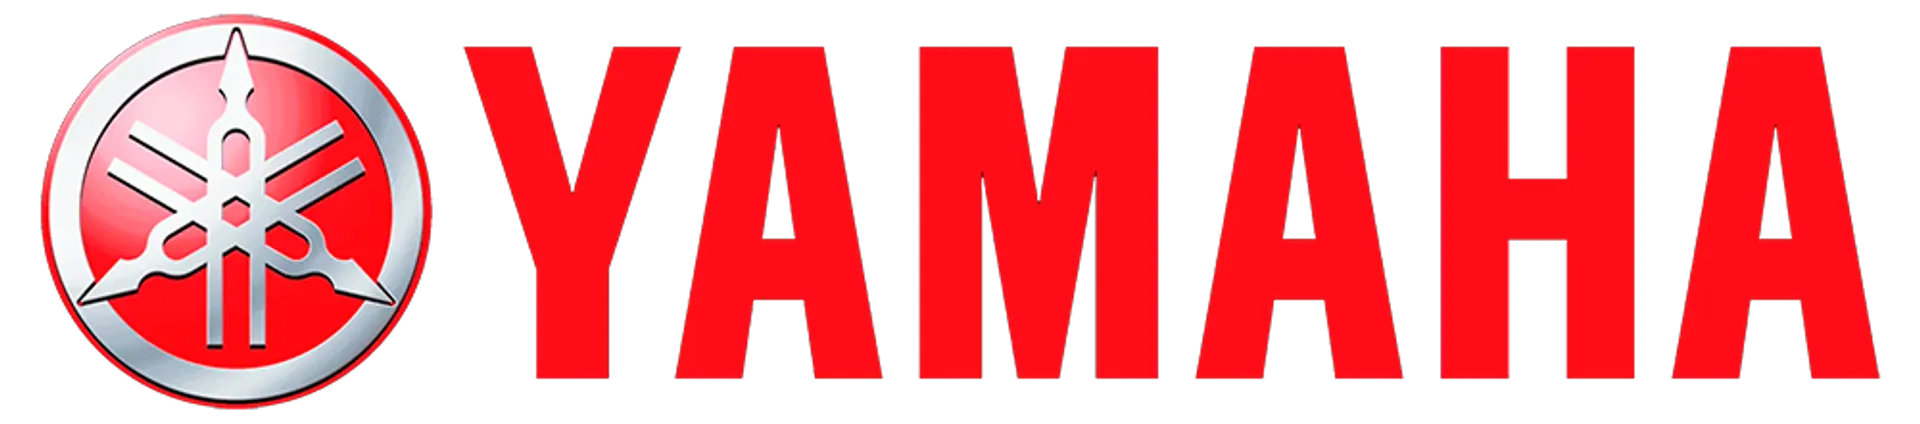 YAMAHA logo. Current weekly ad